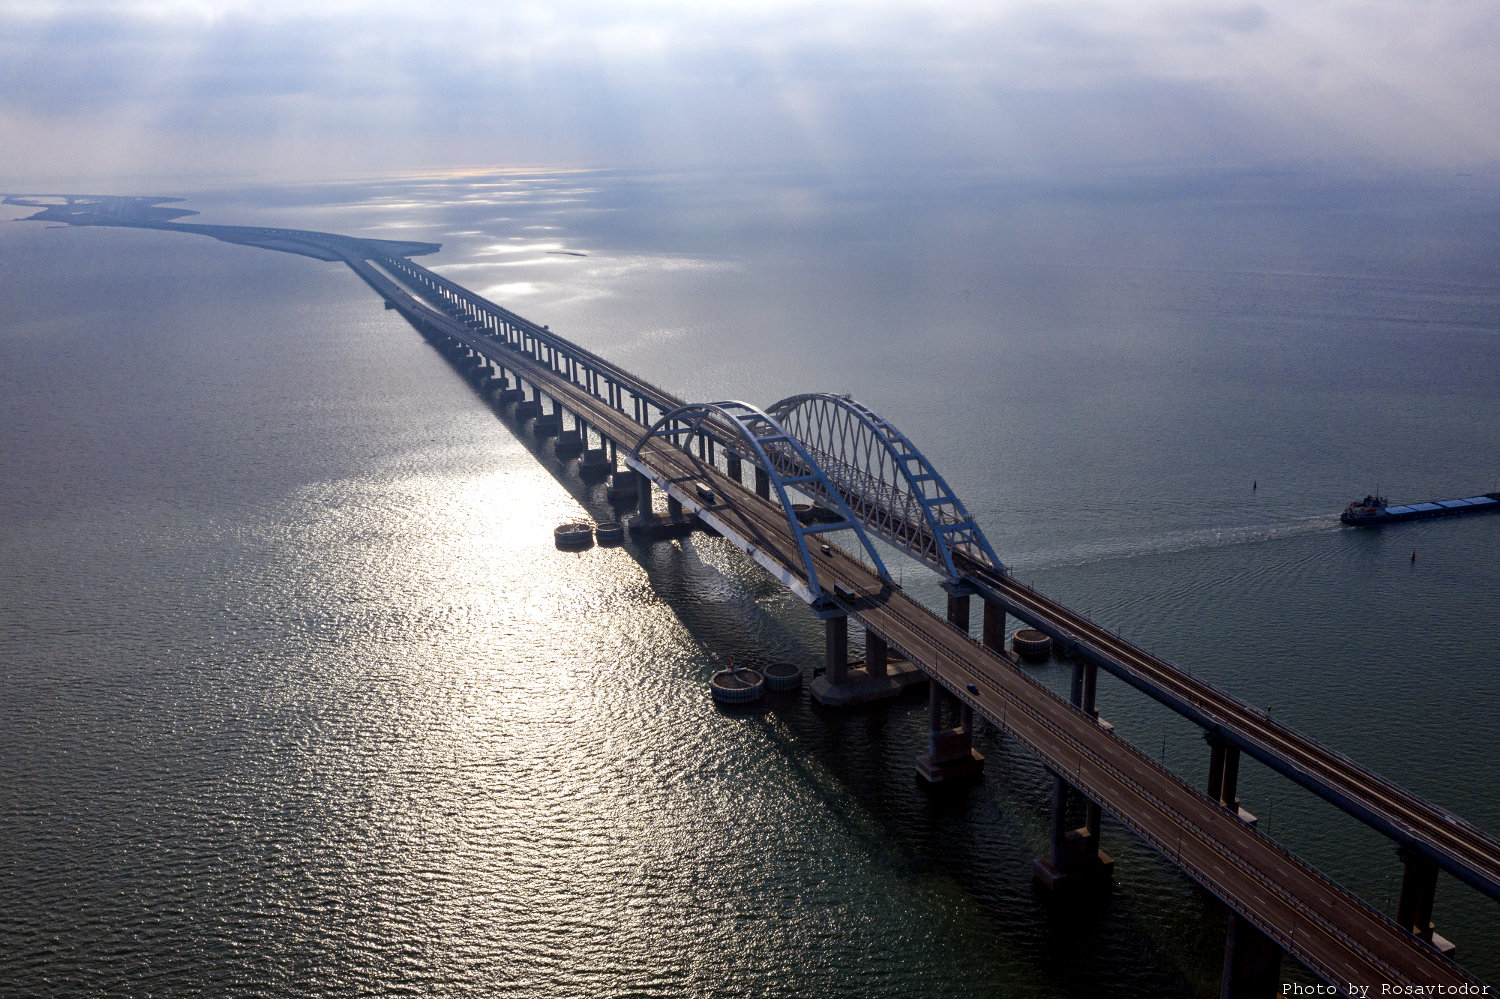 Russia to face legal scrutiny for Kerch Bridge construction - Ukraine's MFA 1